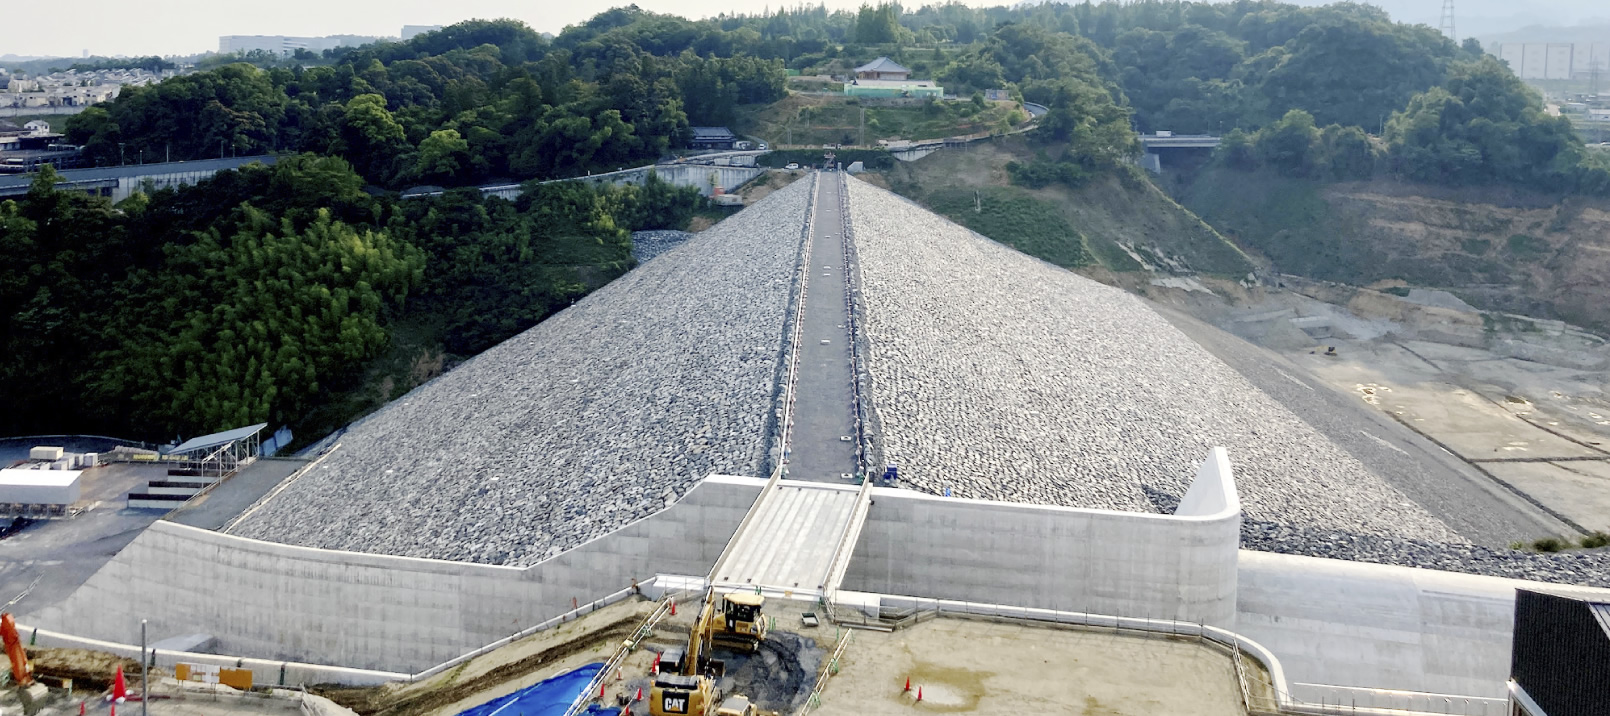 Aigawa Dam Project